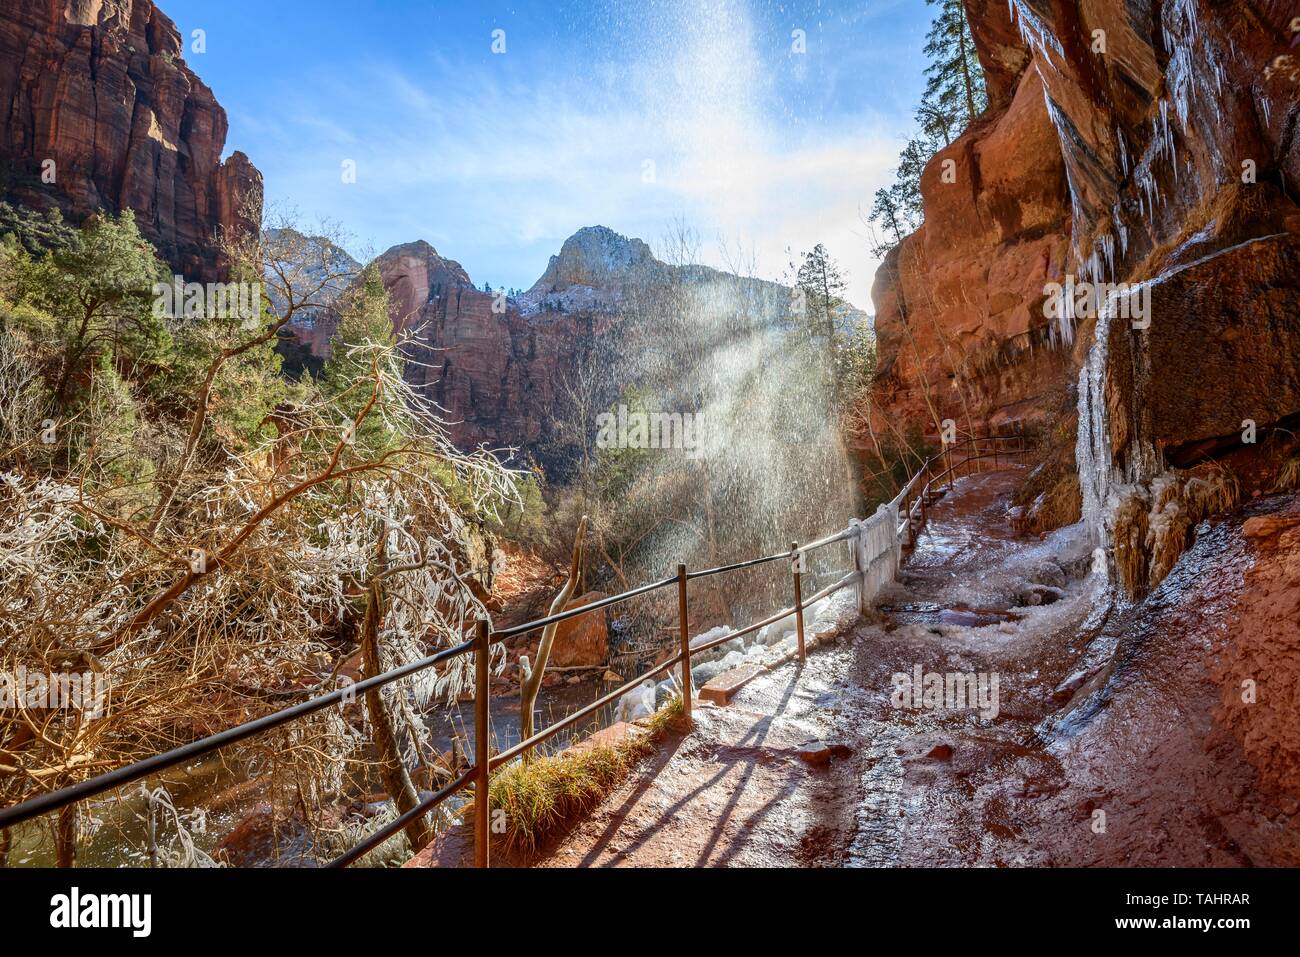 Cascata cade da roccia a strapiombo, ghiacciate escursioni sentiero smeraldo sentiero piscine in inverno, fiume vergine, Parco Nazionale Zion, Utah, Stati Uniti d'America Foto Stock